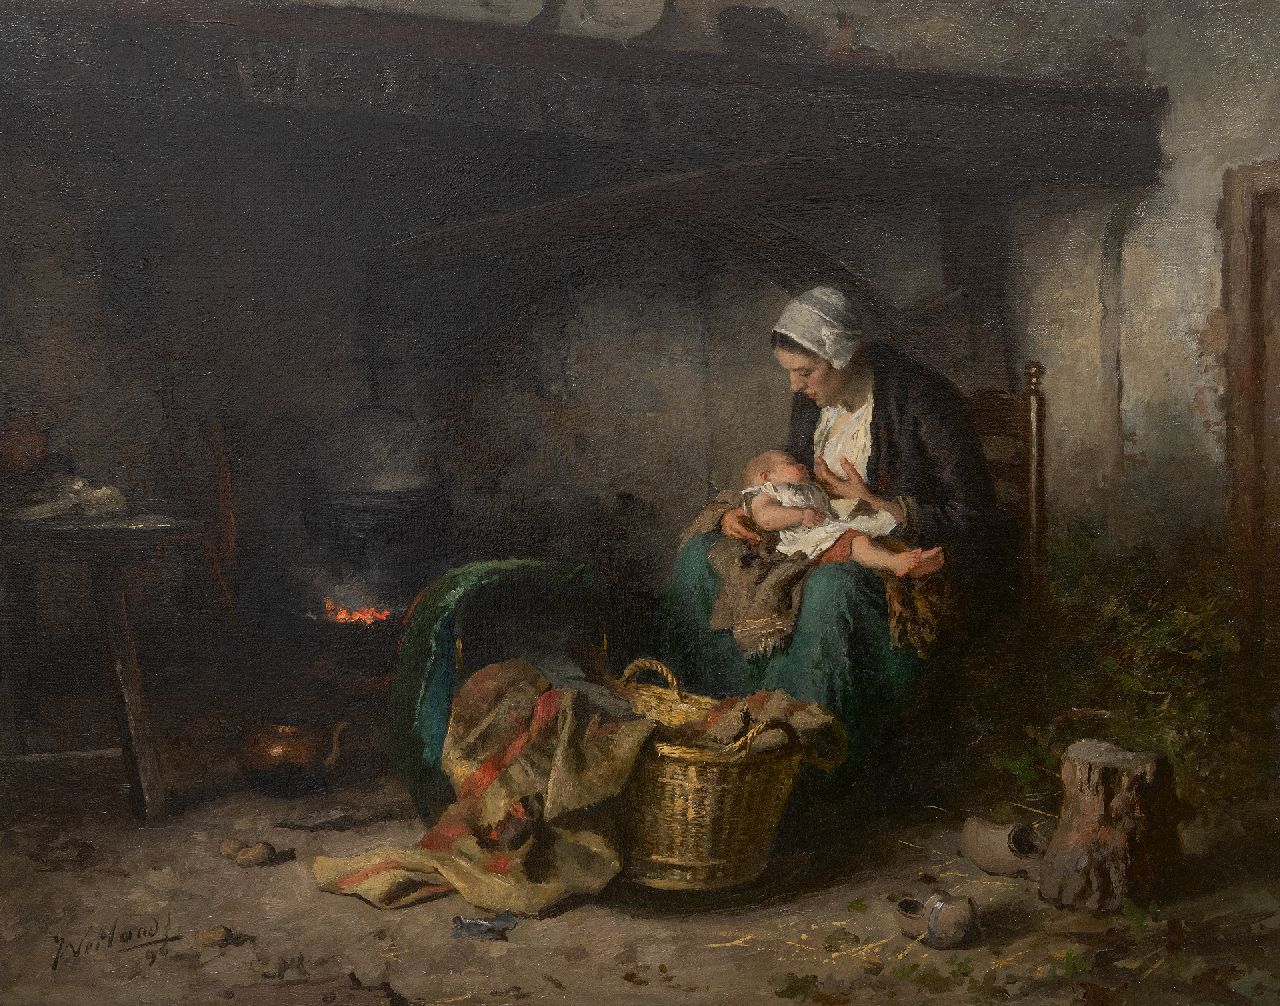 Johannes Weiland | Boereninterieur met moeder en kind, olieverf op doek, 65,3 x 81,2 cm, gesigneerd l.o. en gedateerd '96